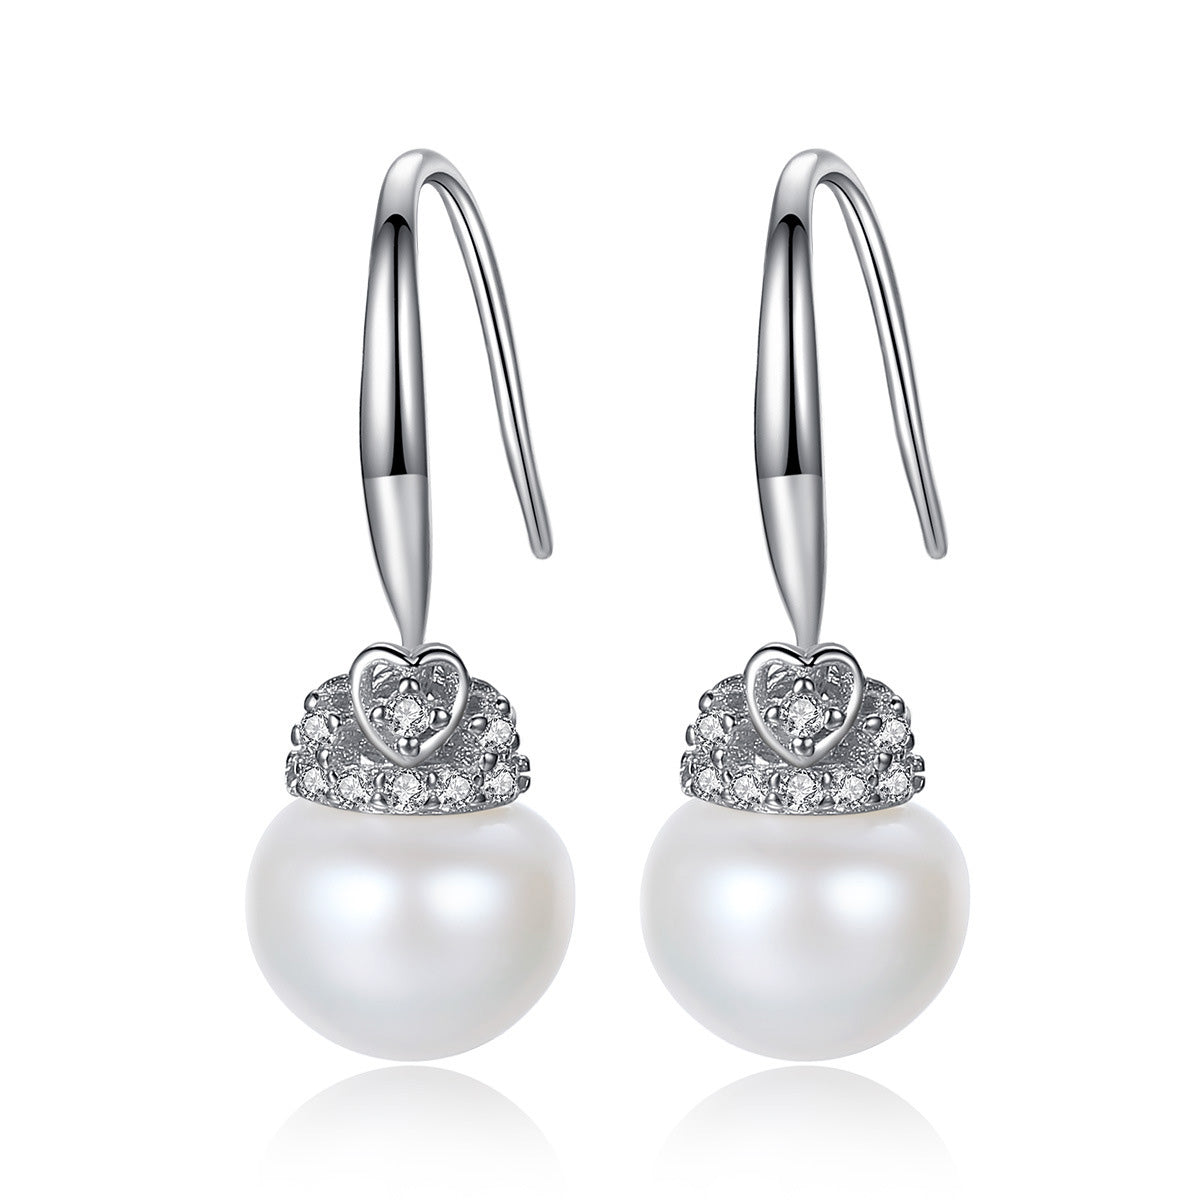 Pearl Drop Earrings Wedding - HERS